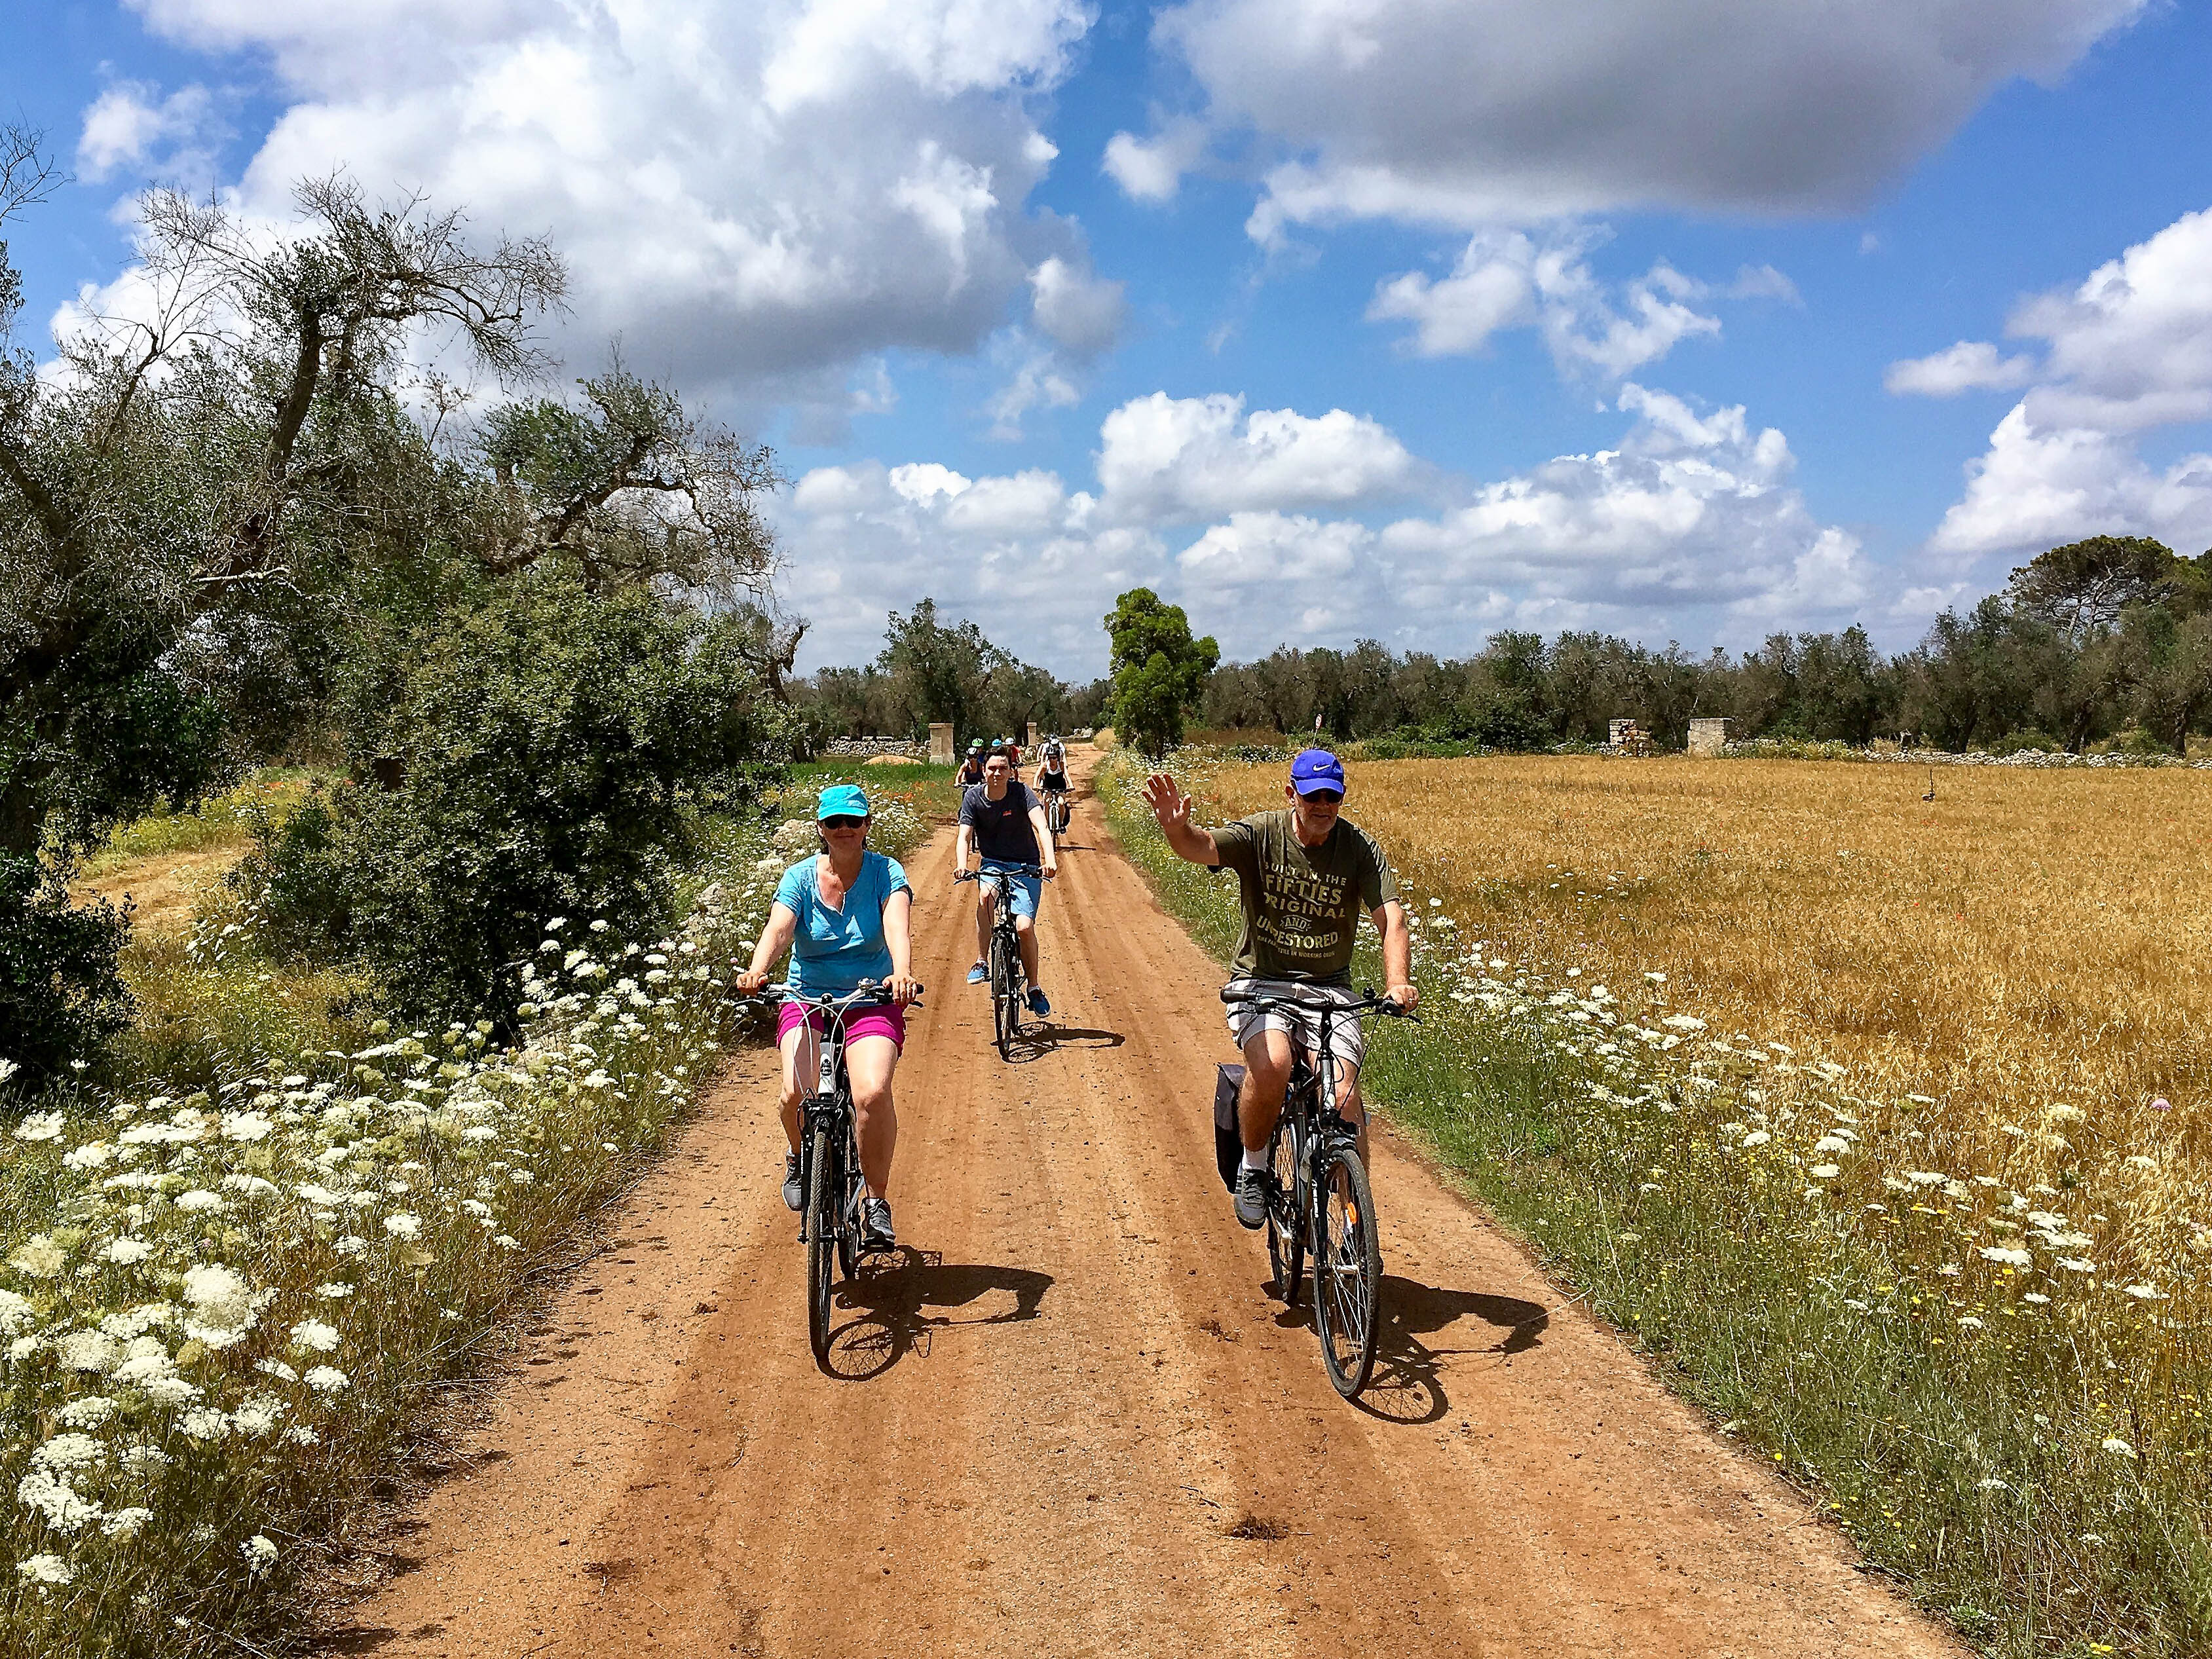 Syklister på vei gjennom olivenlund med store åkre i solskinn